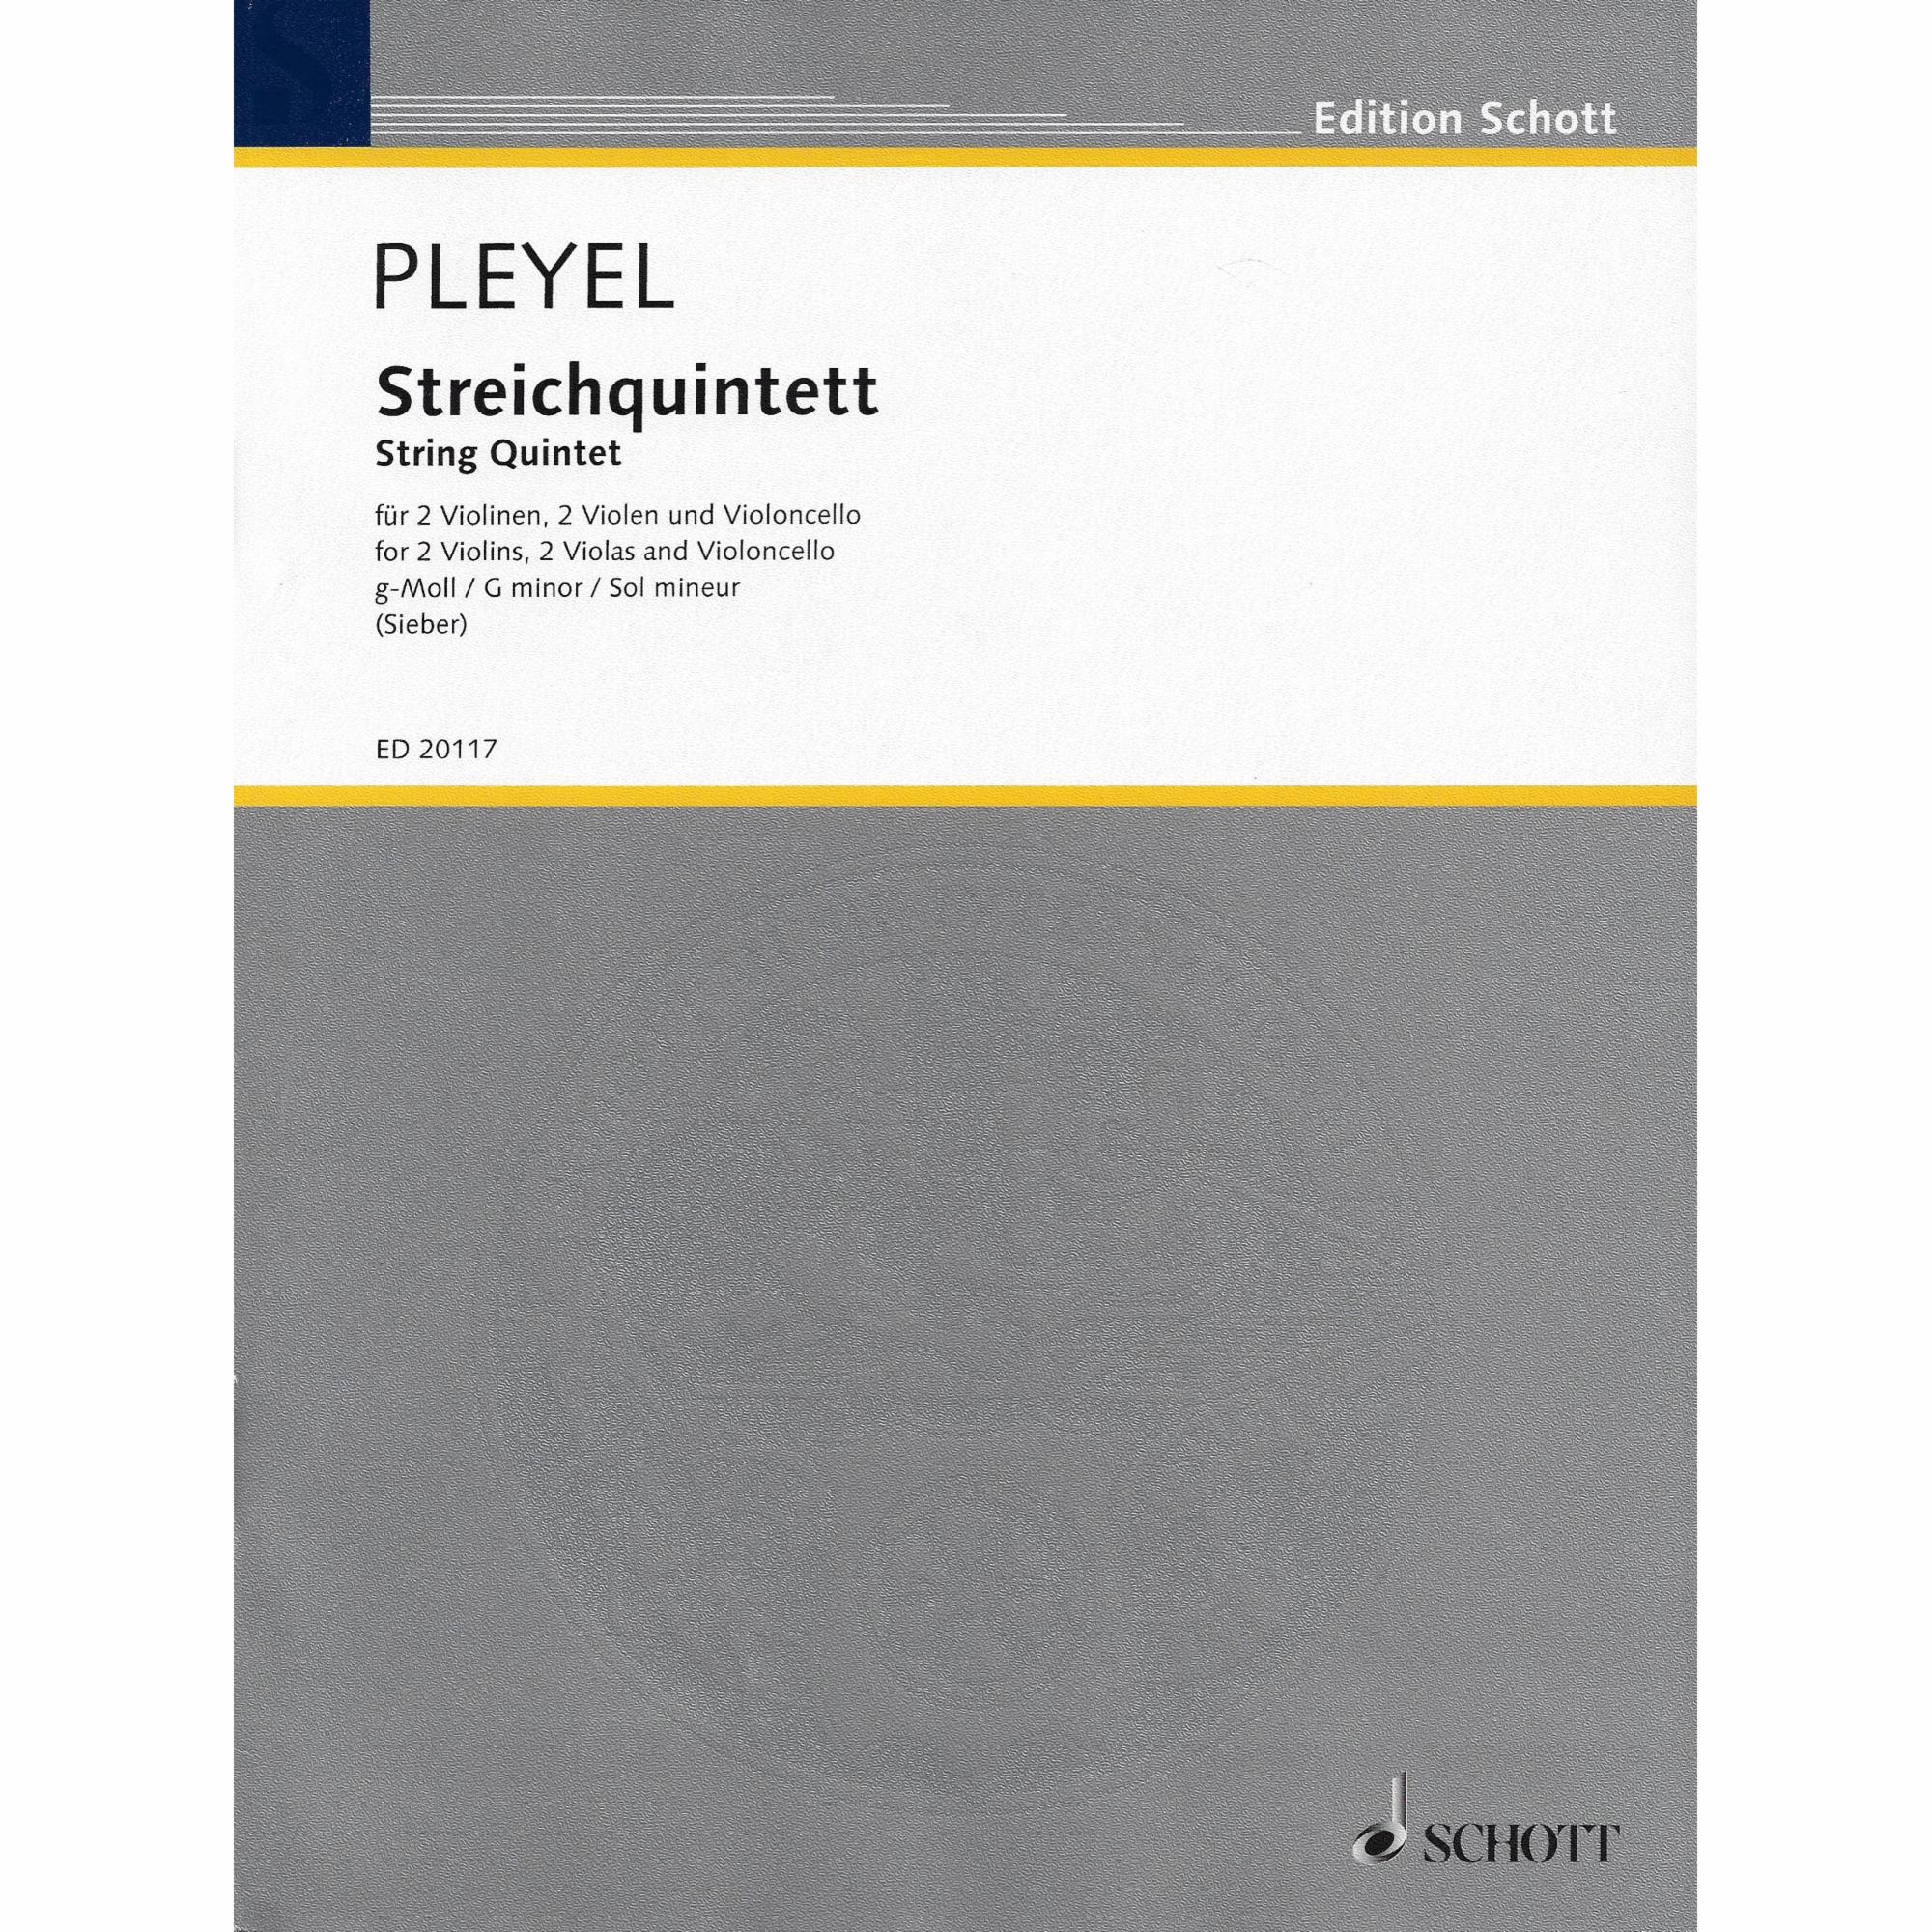 Pleyel -- String Quintet in G Minor